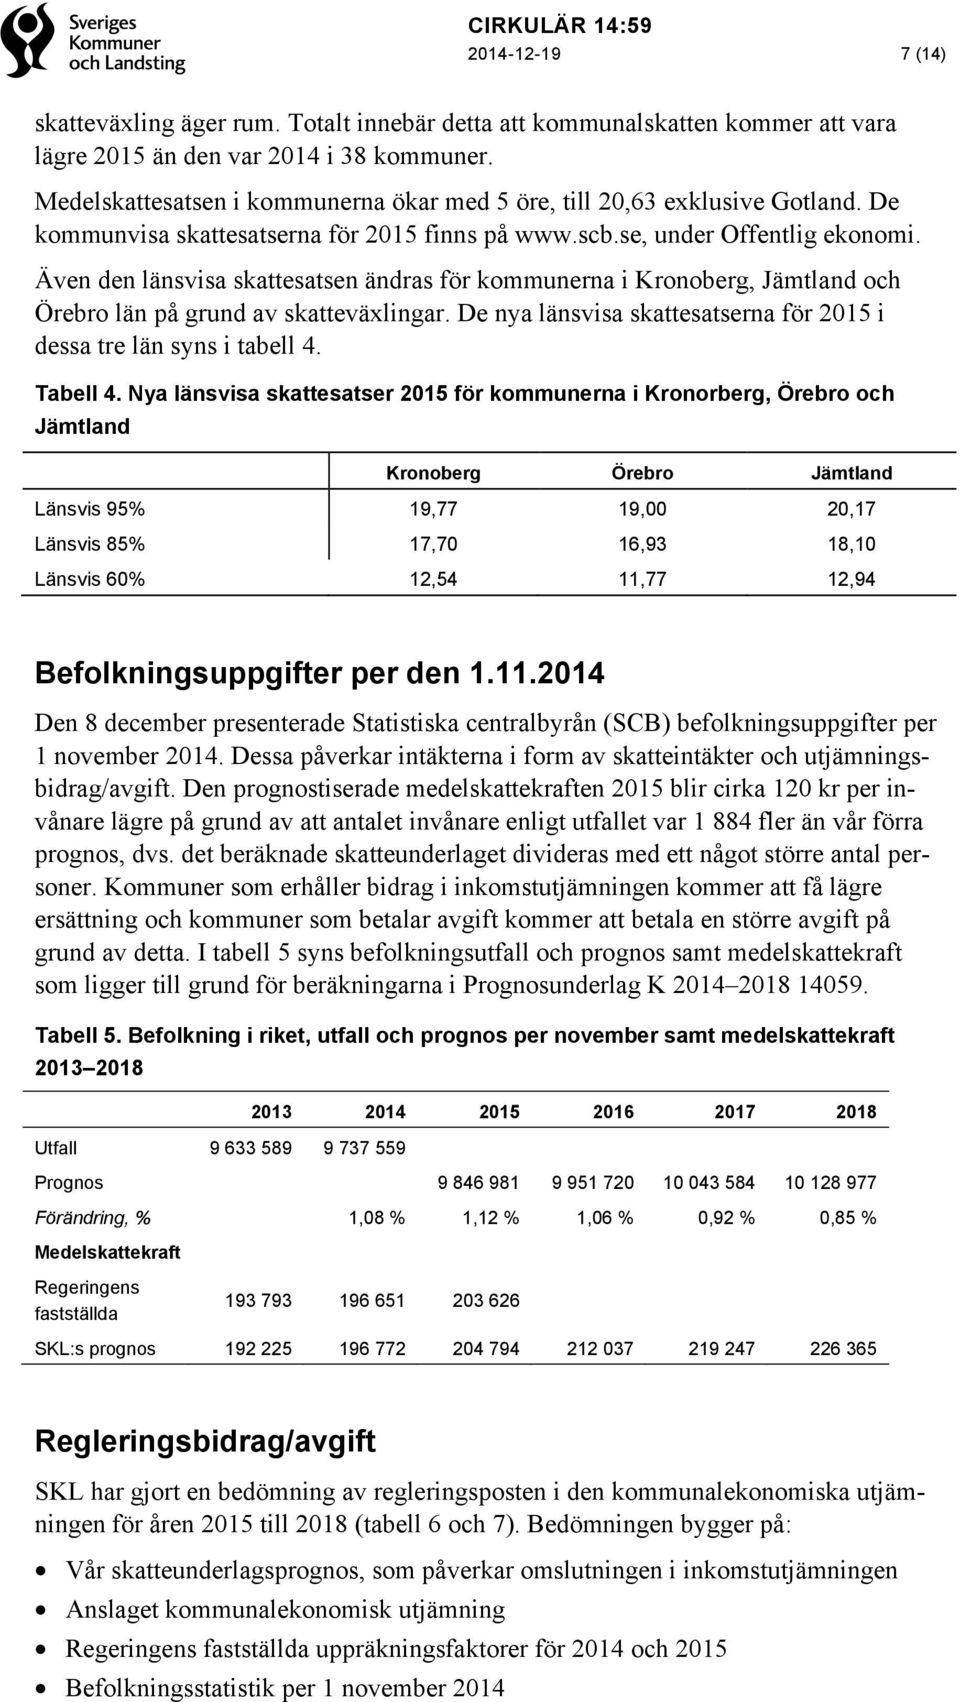 Även den länsvisa skattesatsen ändras för kommunerna i Kronoberg, Jämtland och Örebro län på grund av skatteväxlingar. De nya länsvisa skattesatserna för 2015 i dessa tre län syns i tabell 4.